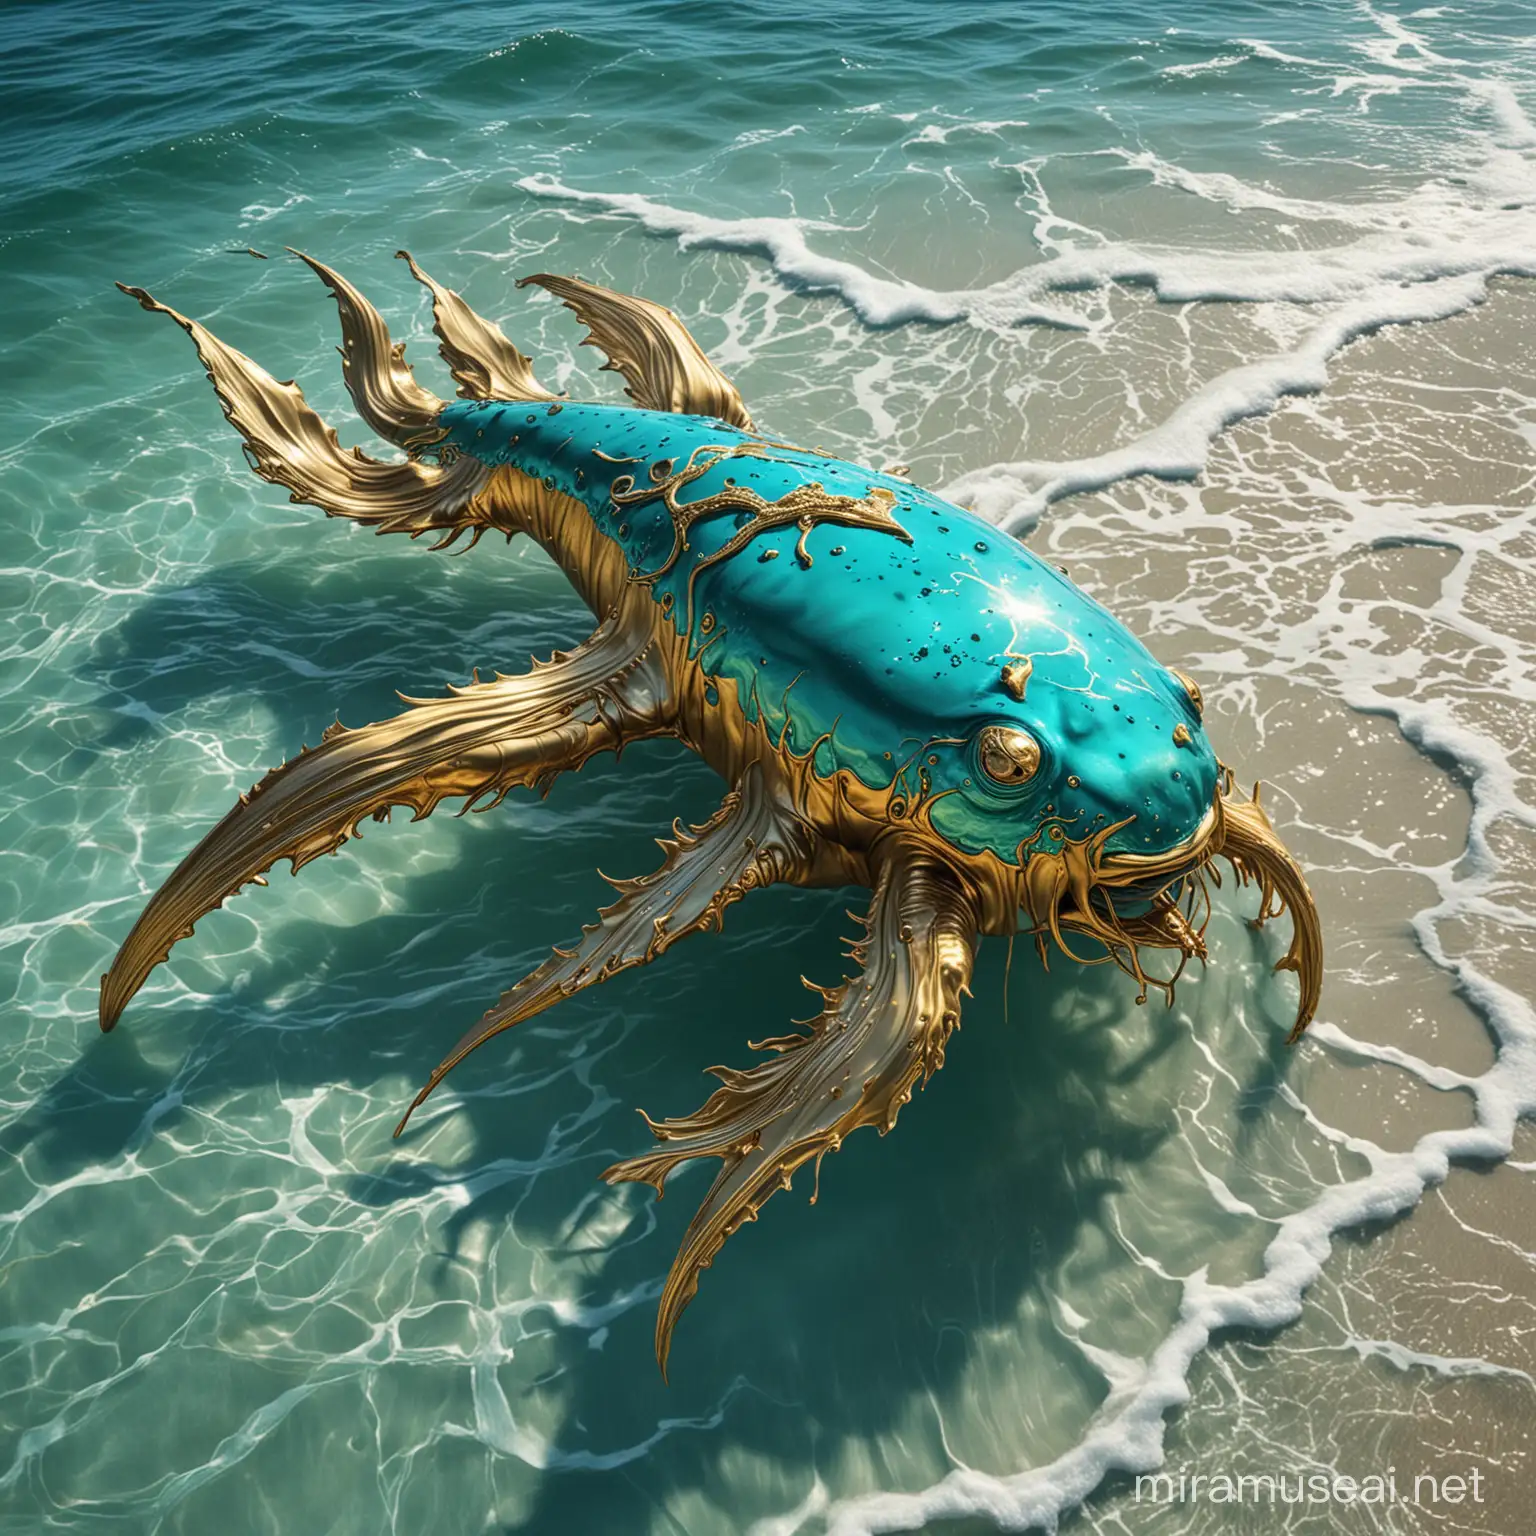 Surrealistic Turquoise Ocean Creature in Liquid Gold